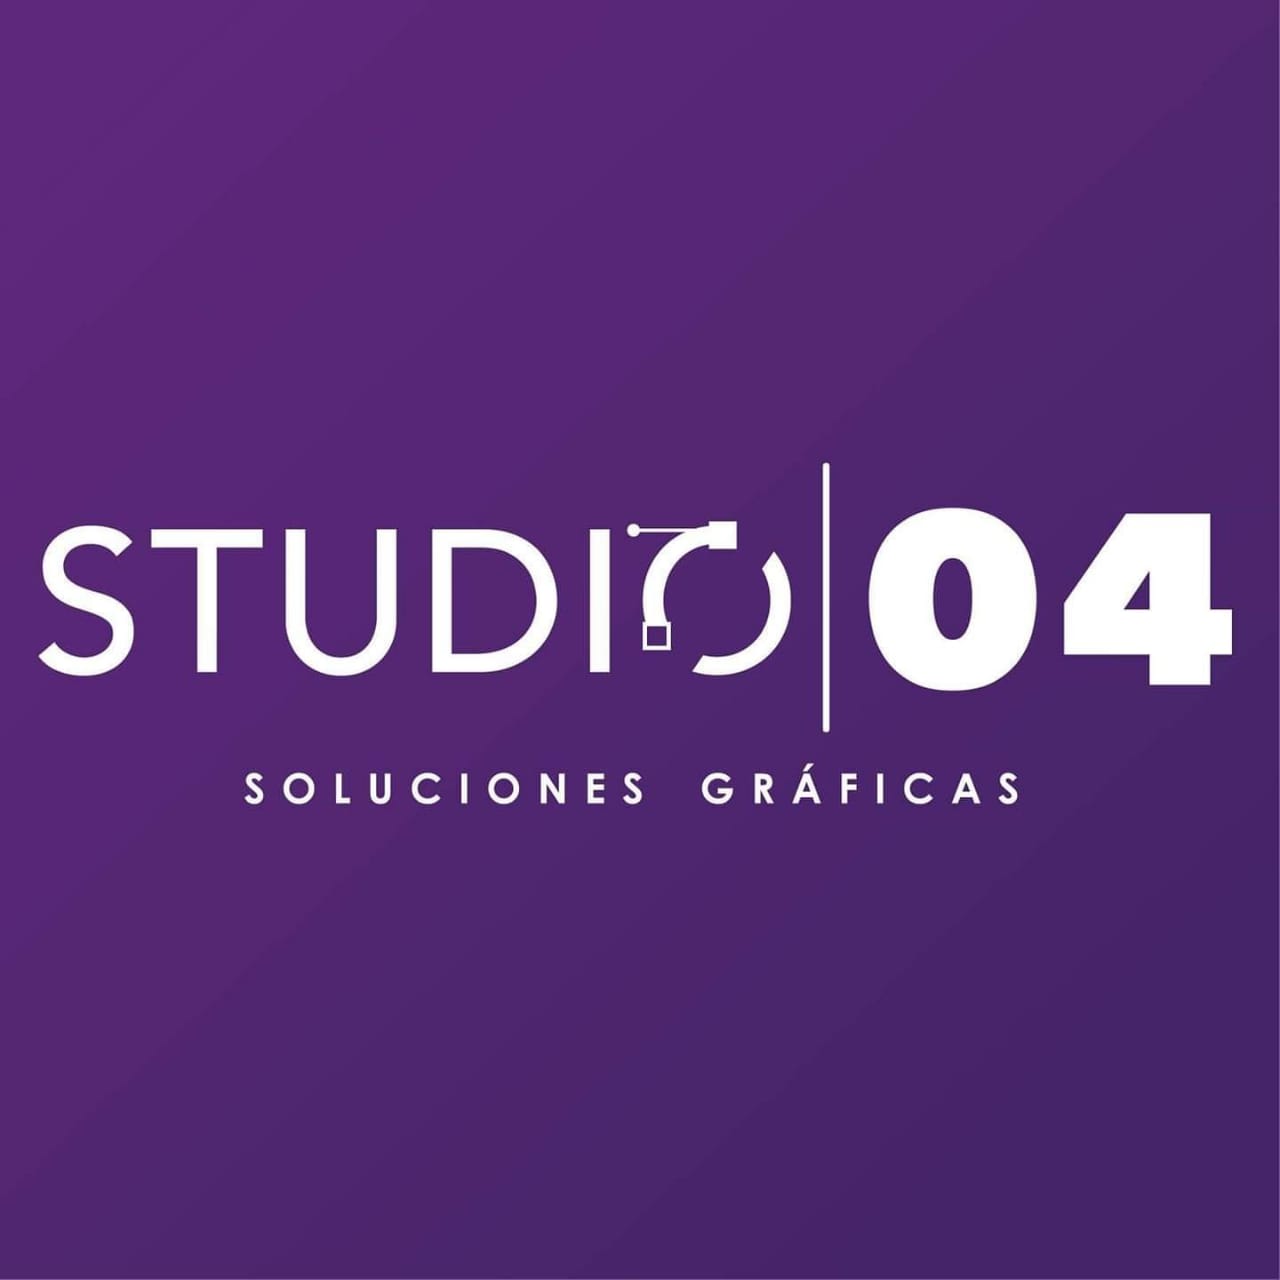 Studio 04 Soluciones Gráficas